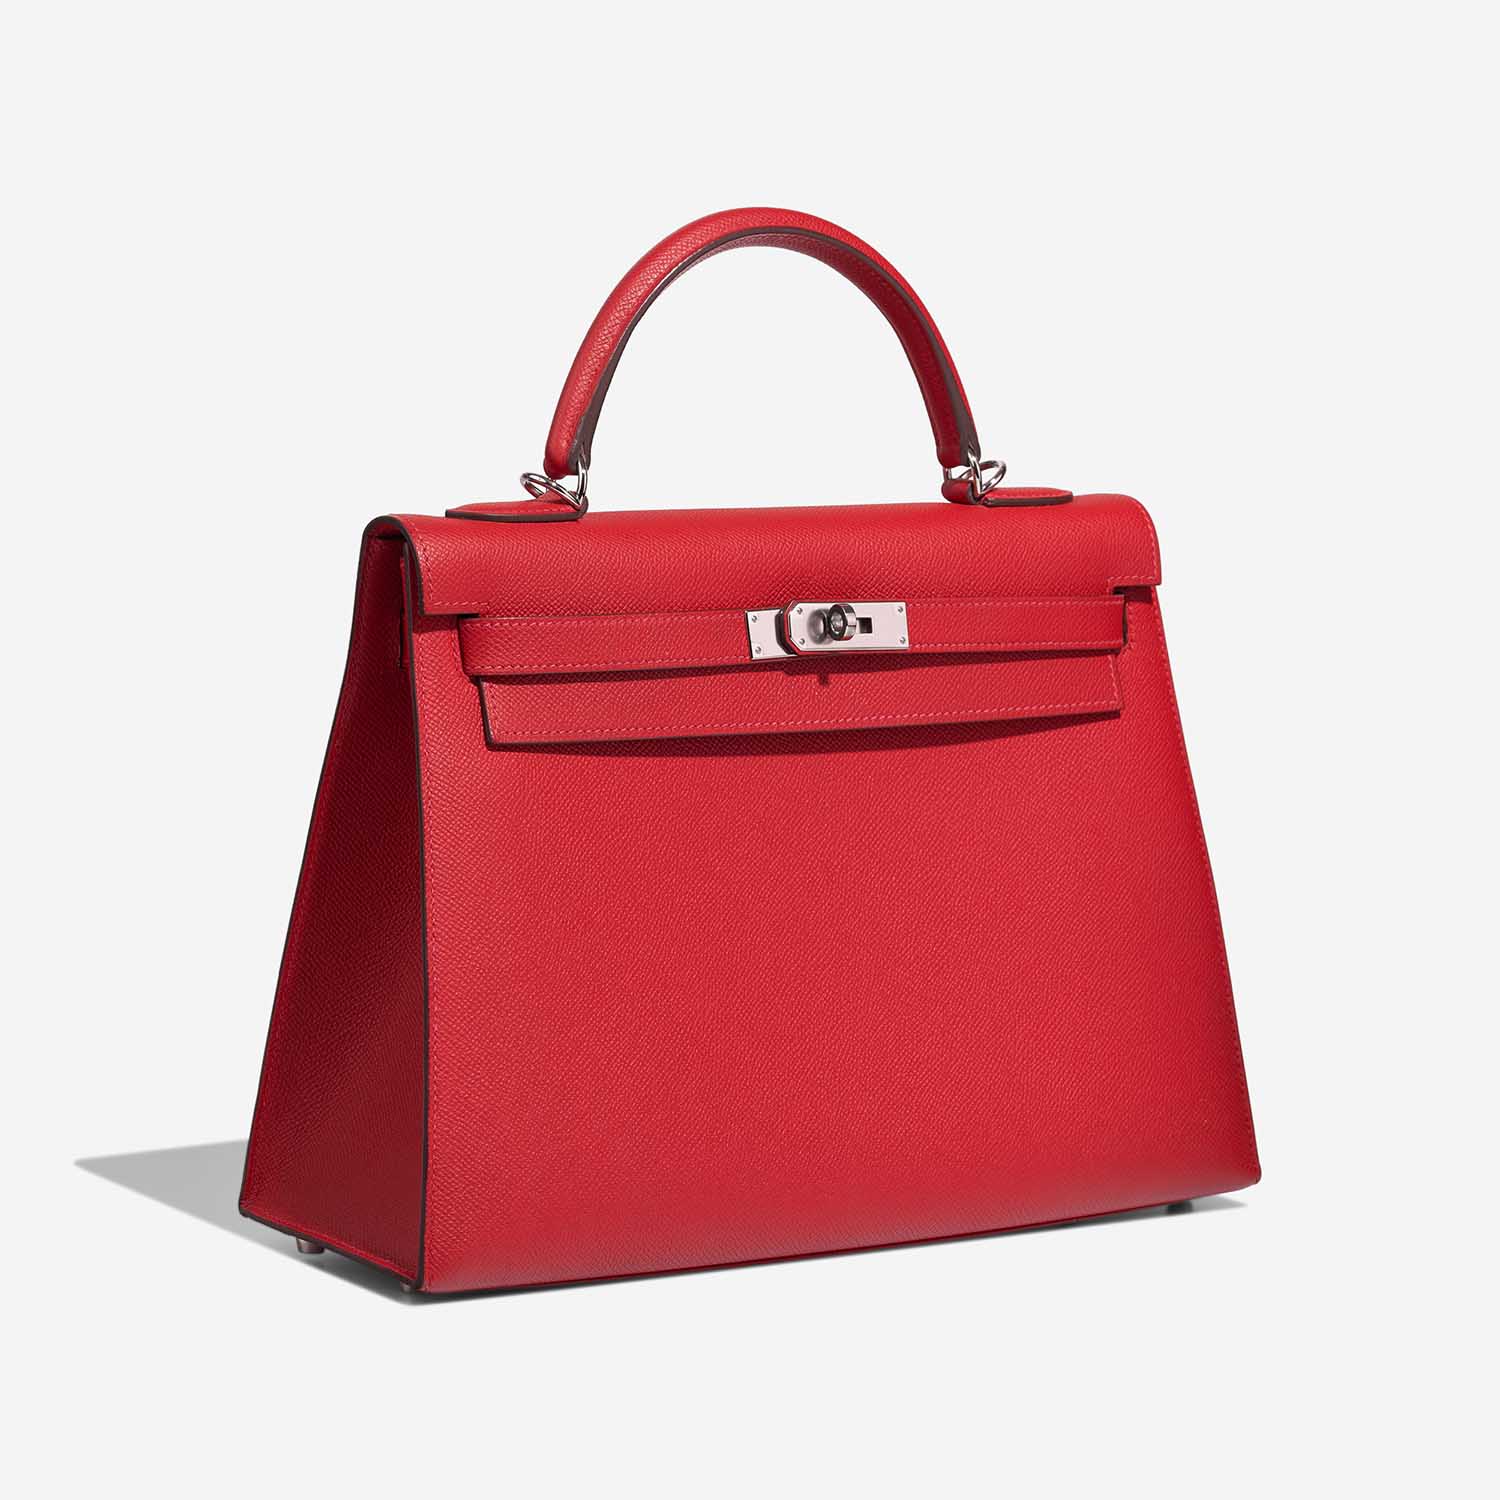 Hermès Kelly 32 RougeCasaque Side Front | Verkaufen Sie Ihre Designer-Tasche auf Saclab.com